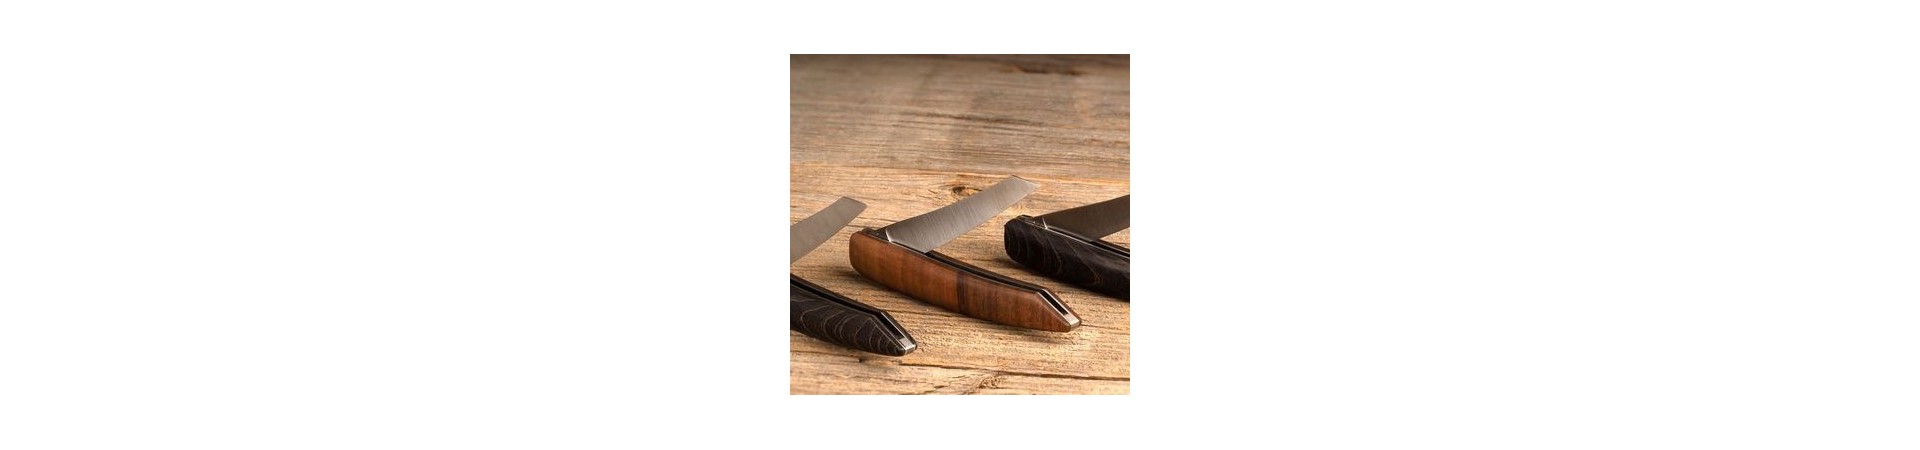 Sknife-Messer